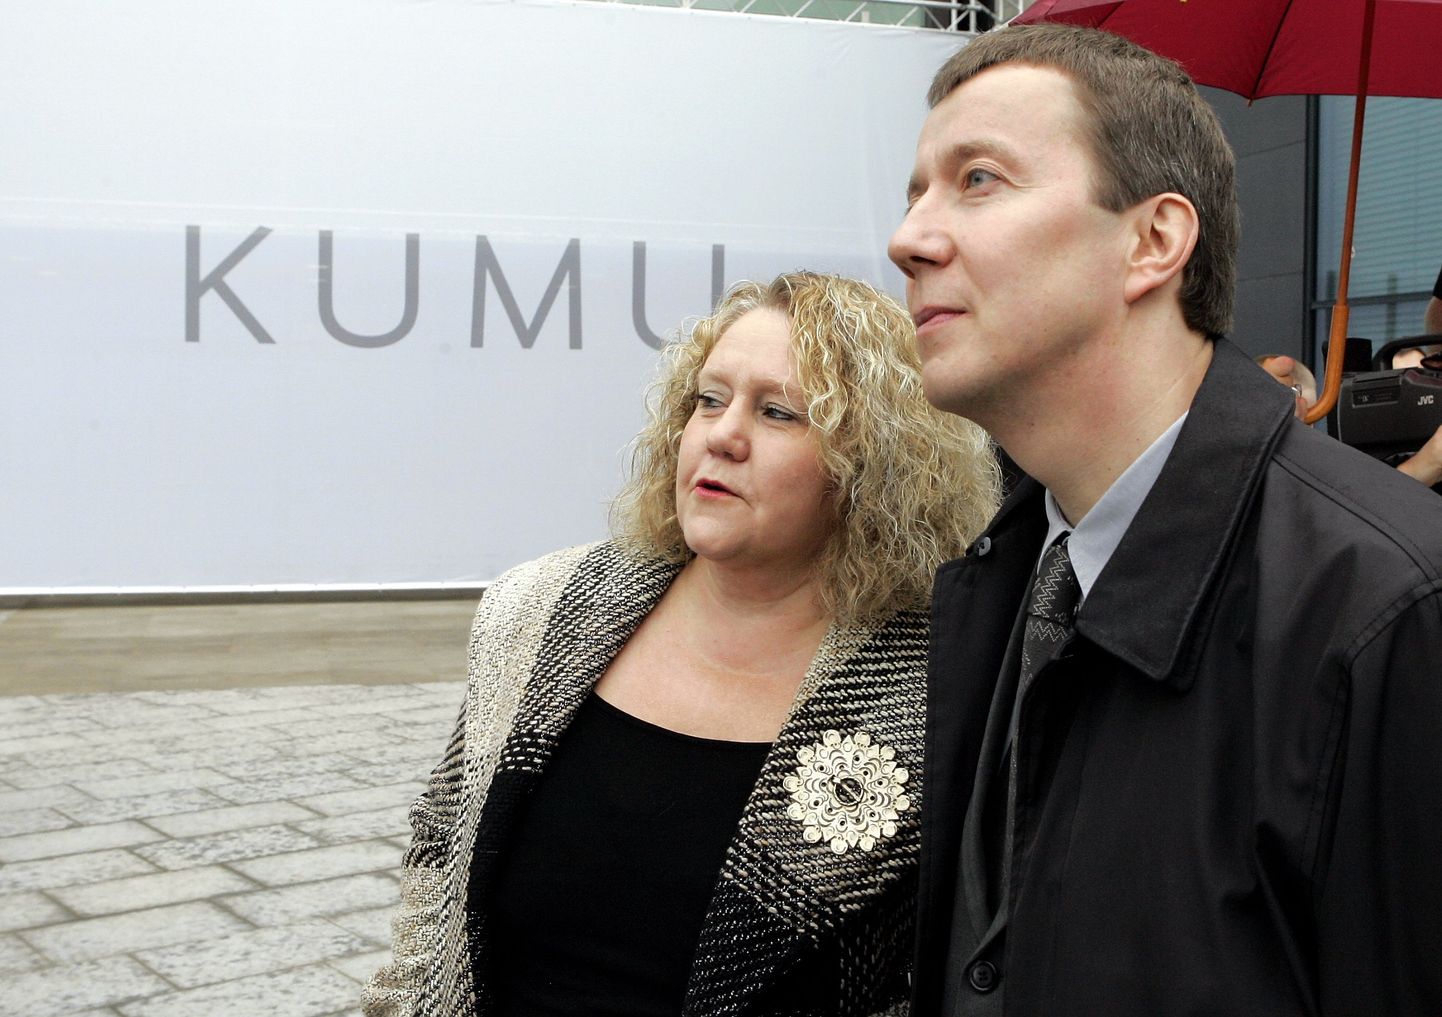 Marika Valgu üheks suuremaks saavutuseks on uue muuseumi Kumu ehitamine. Pildil on ta koos Kumu arhitekti Pekka Vaapavuoriga.